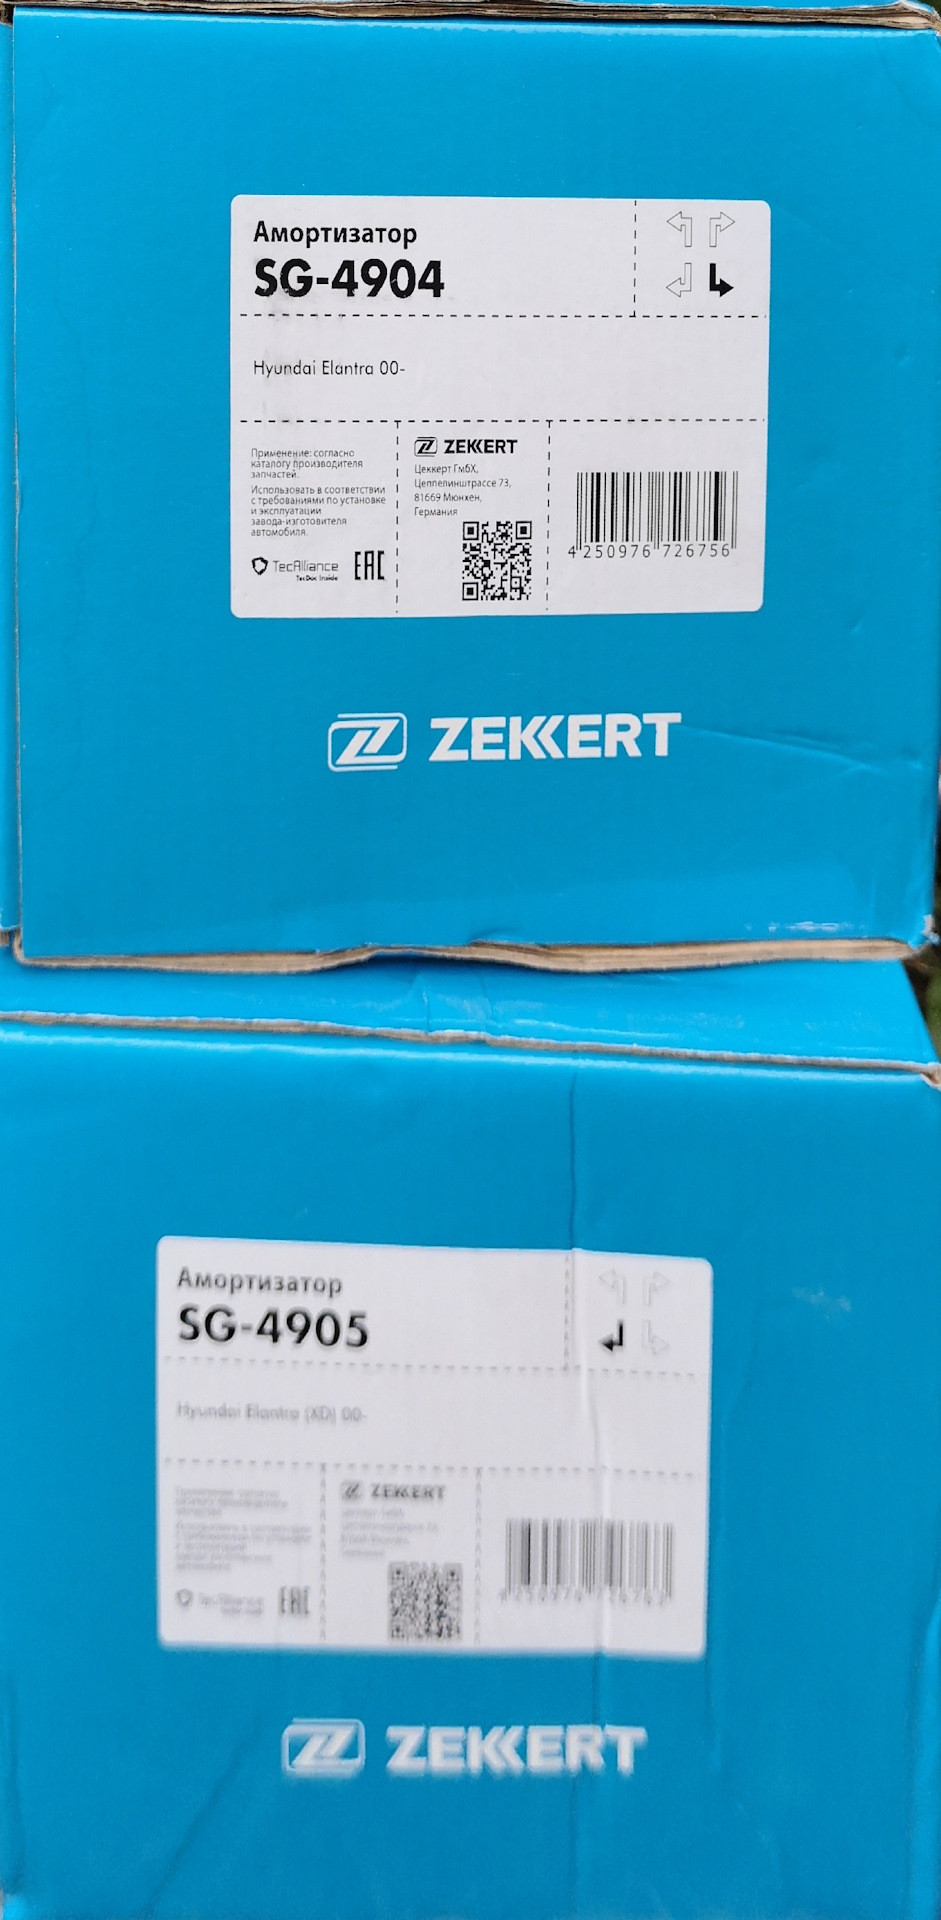 Производитель zekkert отзывы. Zekkert амортизаторы отзывы. Be4068 Zekkert отзывы. Mk6010 Zekkert. Zekkert MK-5028 отзывы.